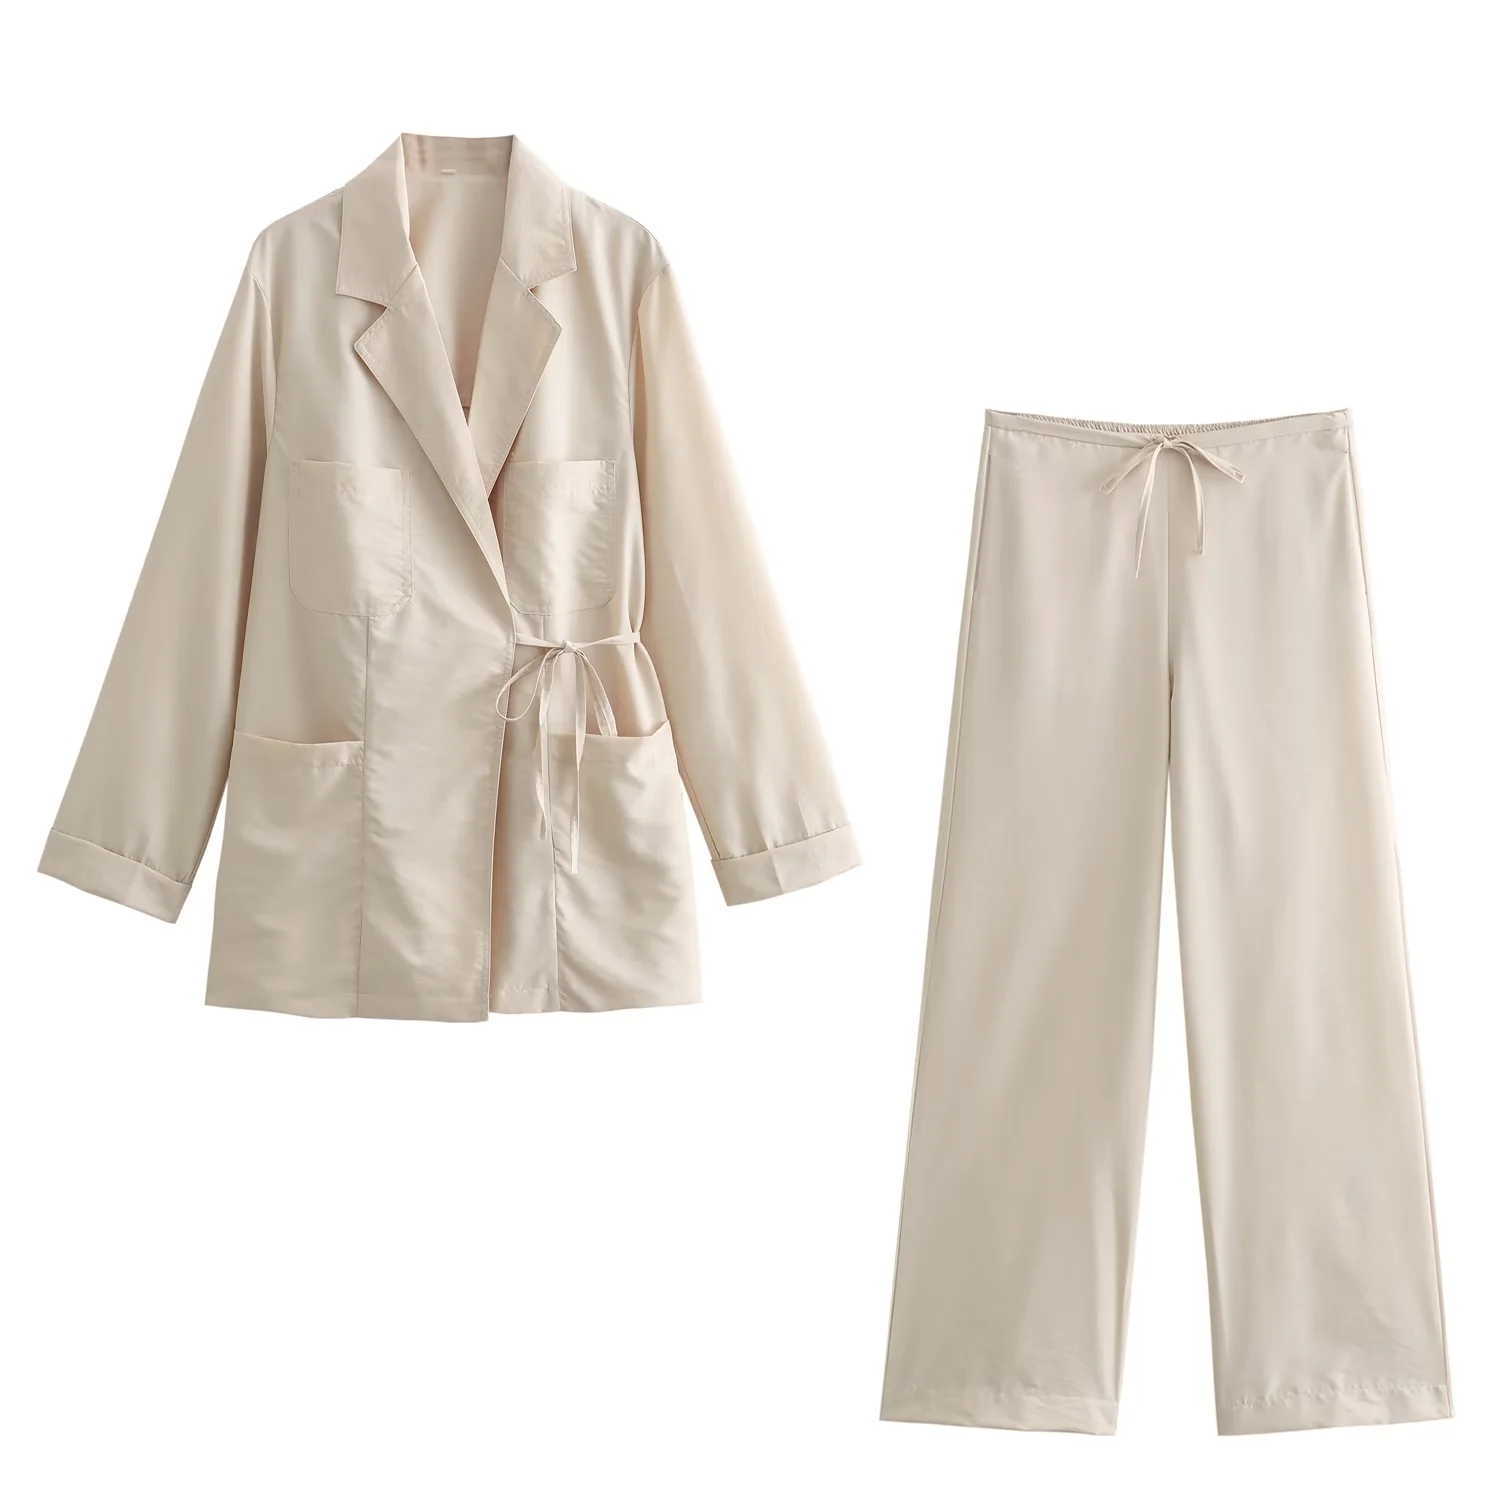 Fashion White Polyester Lapel Lace-up Jacket,Coat-Jacket